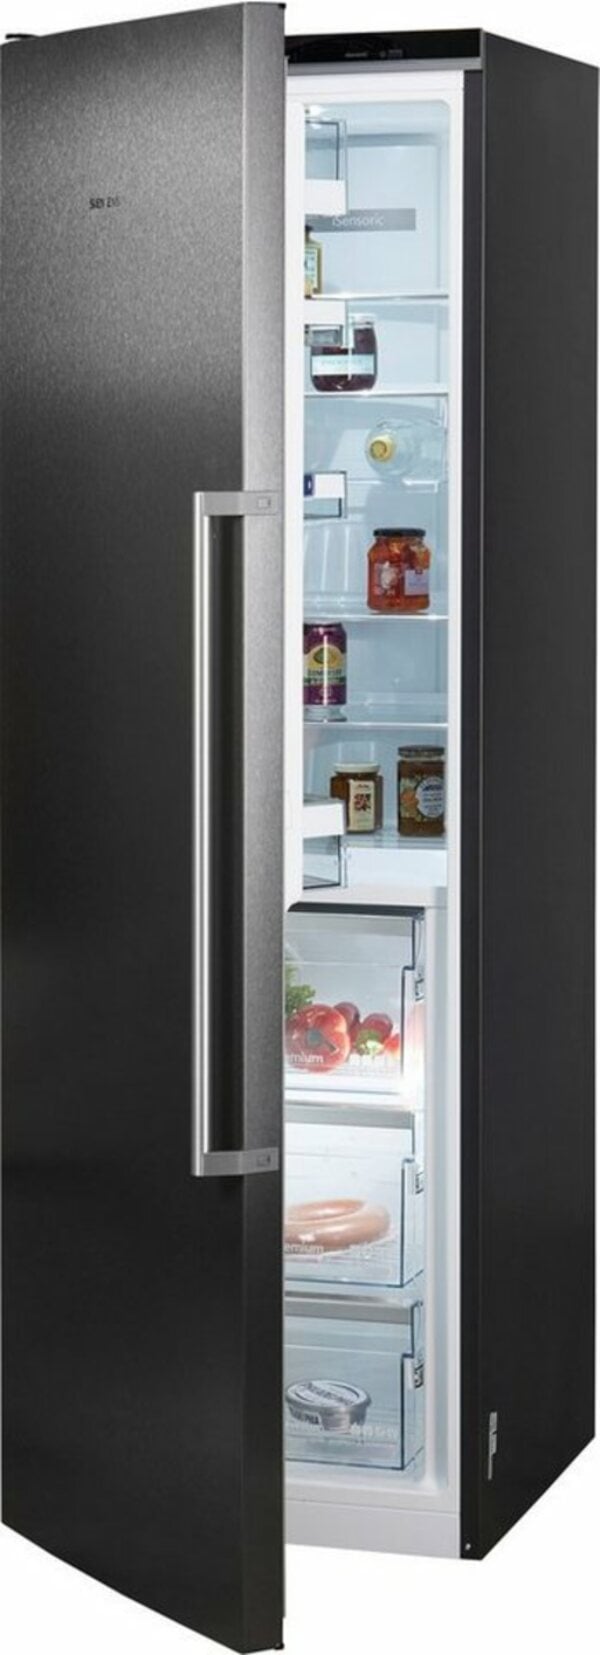 Bild 1 von SIEMENS Kühlschrank iQ700 KS36FPXCP, 186 cm hoch, 60 cm breit